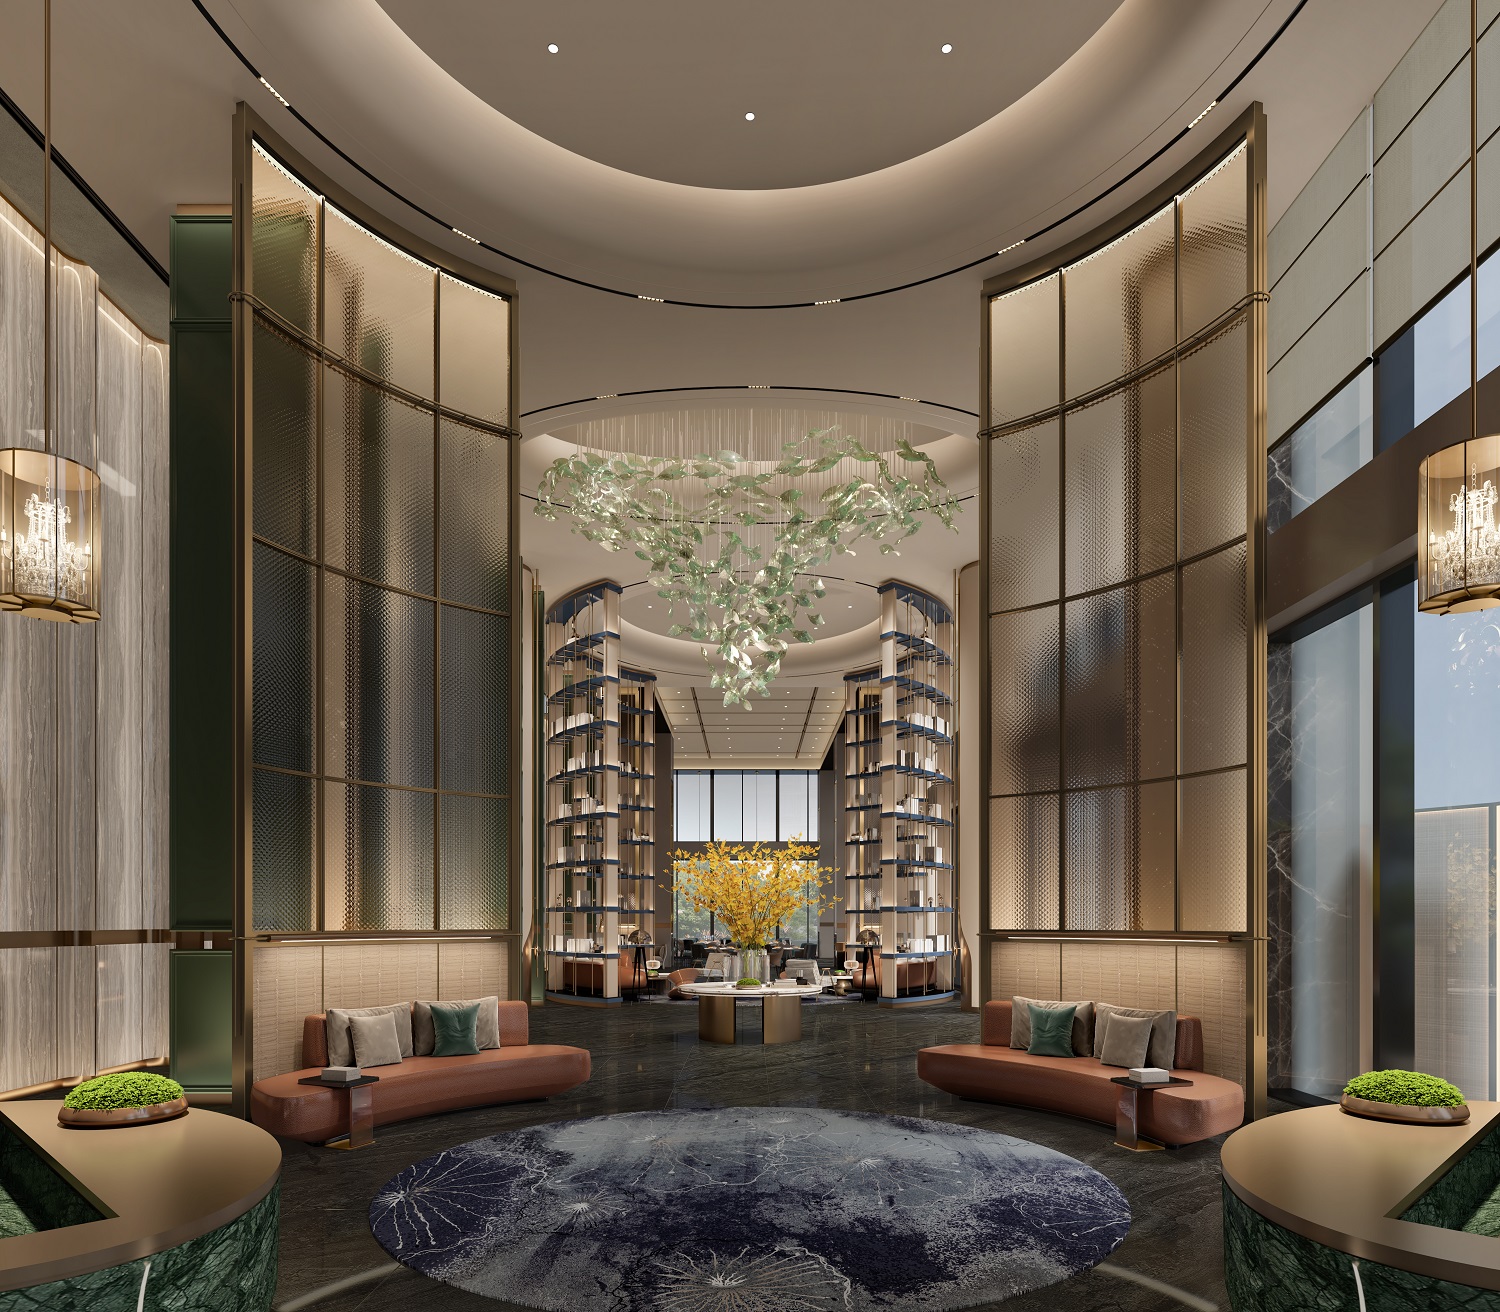 希尔顿进一步扩张在穗布局 广州第三家希尔顿旗舰品牌酒店正式开业_资讯频道_悦游全球旅行网